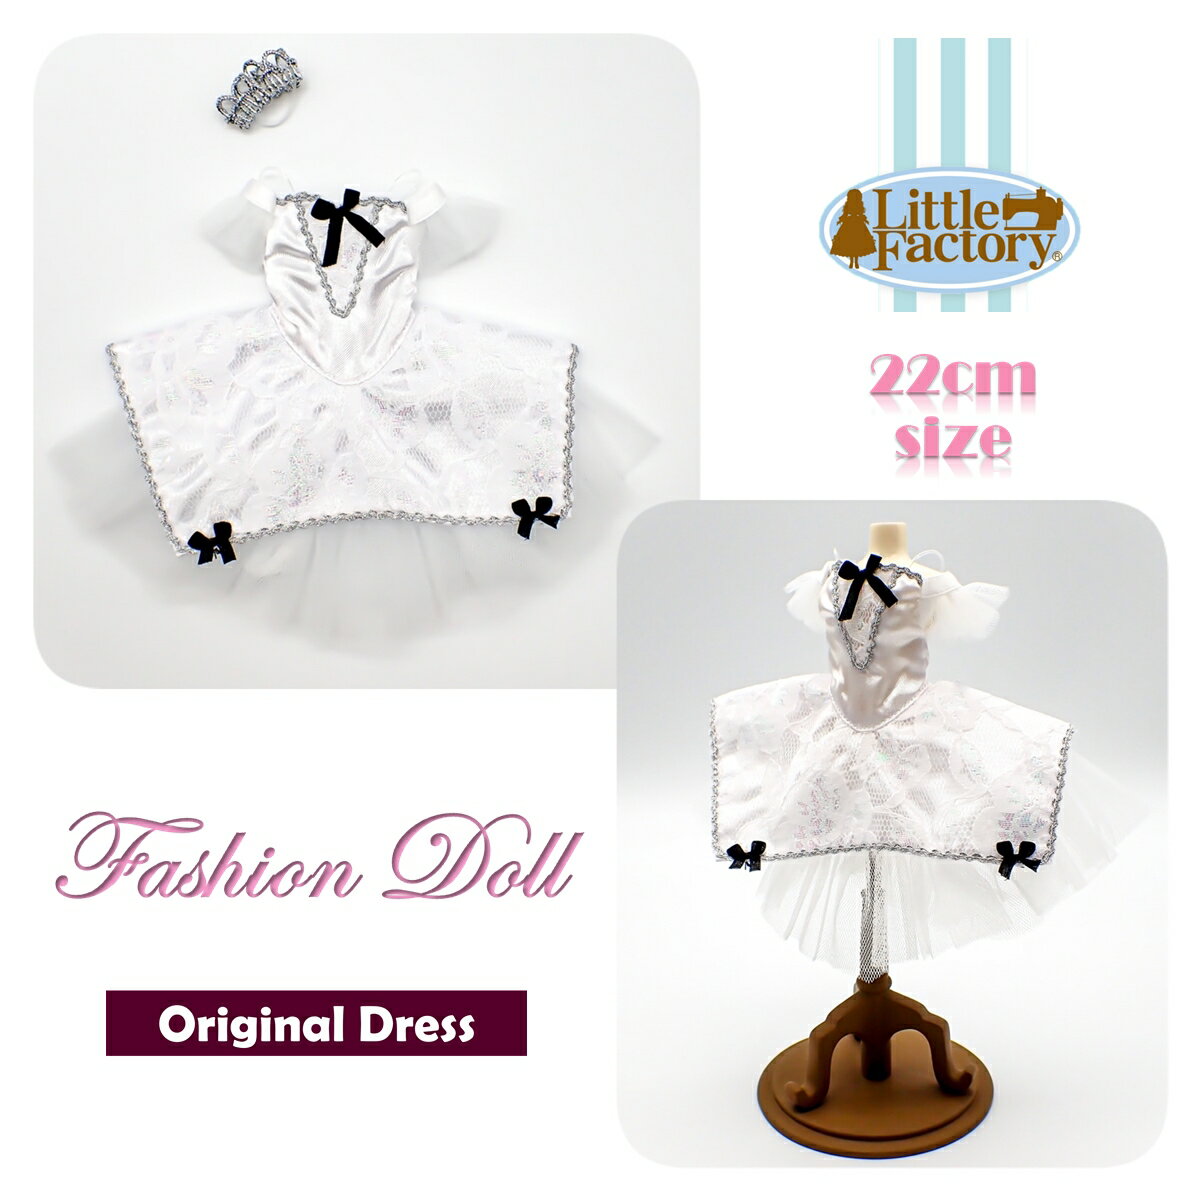 着せ替え 人形 ドレス お人形 22cm ドールサイズリトルファクトリー オリジナルドレスFASHION DOLL DRESS OUTFITS LITTLE FACTORY